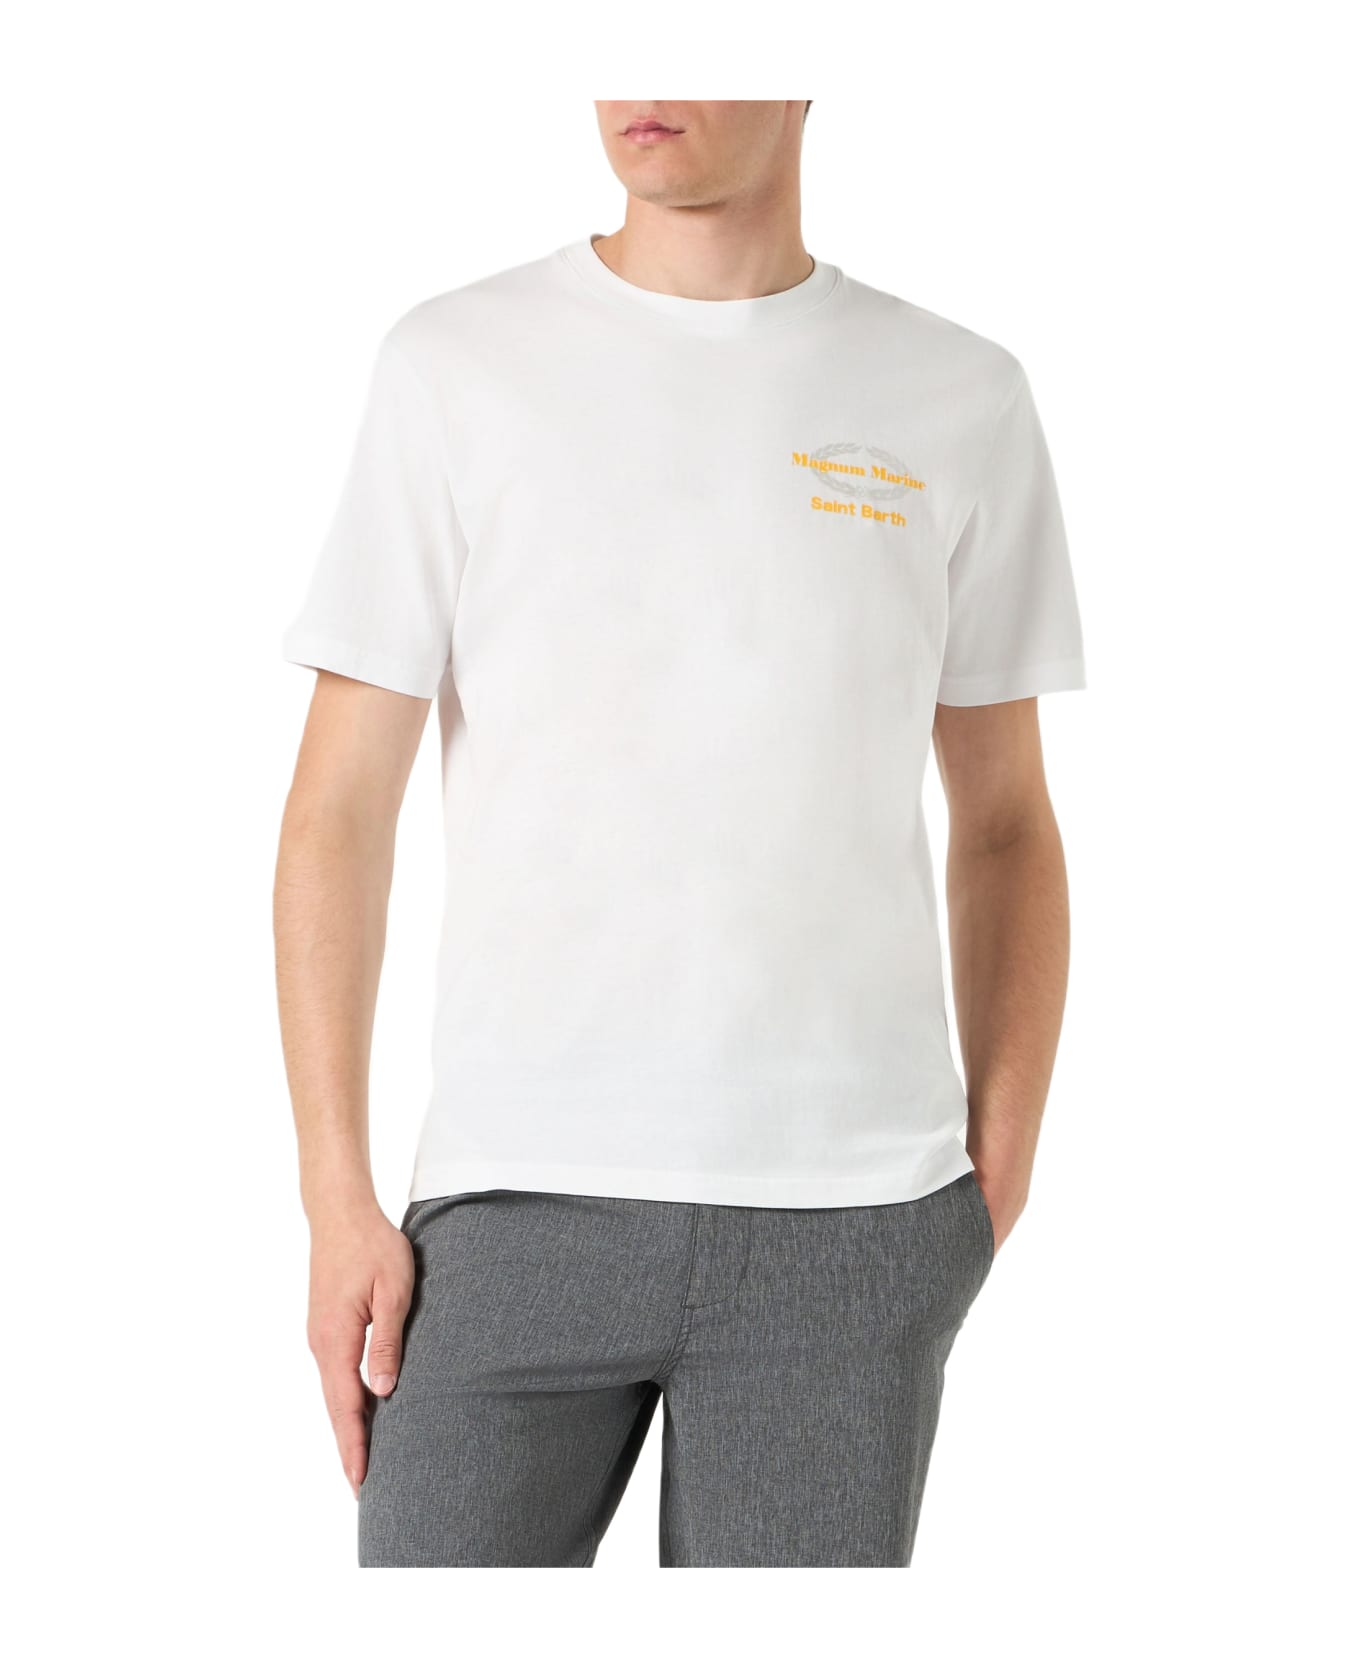 MC2 Saint Barth Man Cotton T-shirt With Magnum Marine Saint Barth Print - WHITE